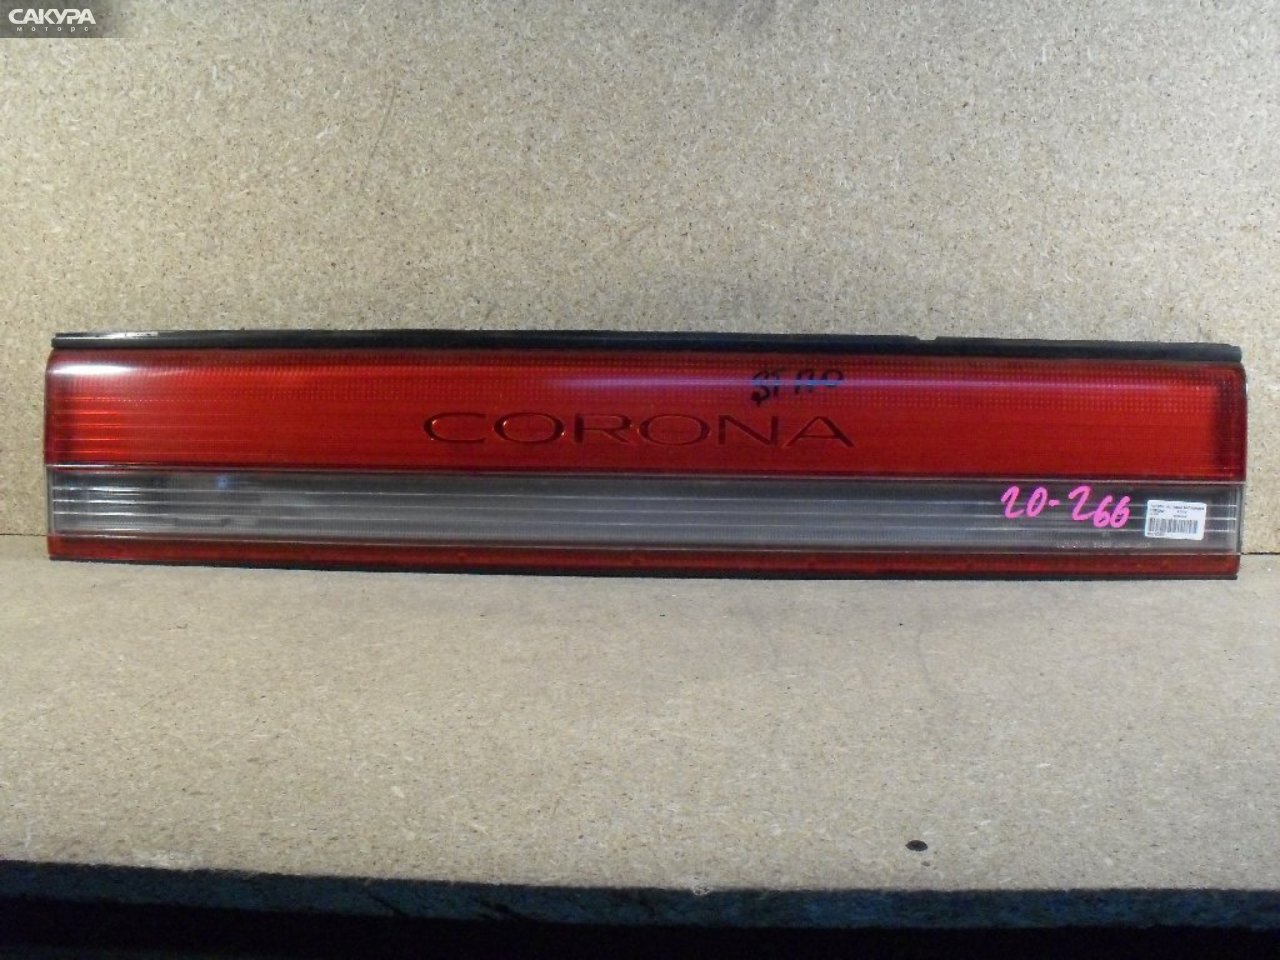 Фонарь вставка багажника Toyota Corona AT170 20-266: купить в Сакура Абакан.